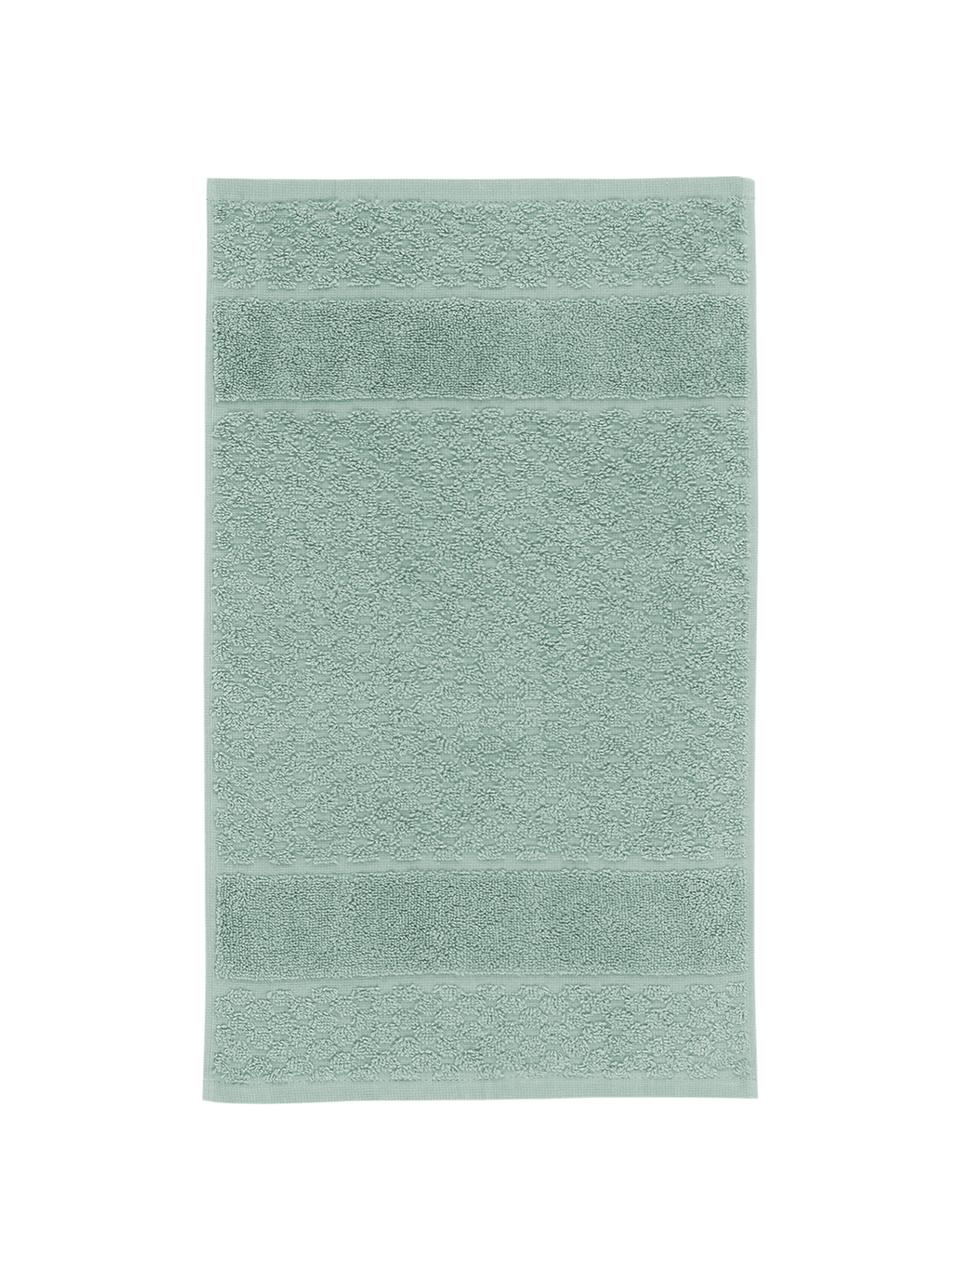 Handdoek Katharina met honingraatpatroon, verschillende formaten, Groen, Handdoek, B 50 x L 100 cm, 2 stuks